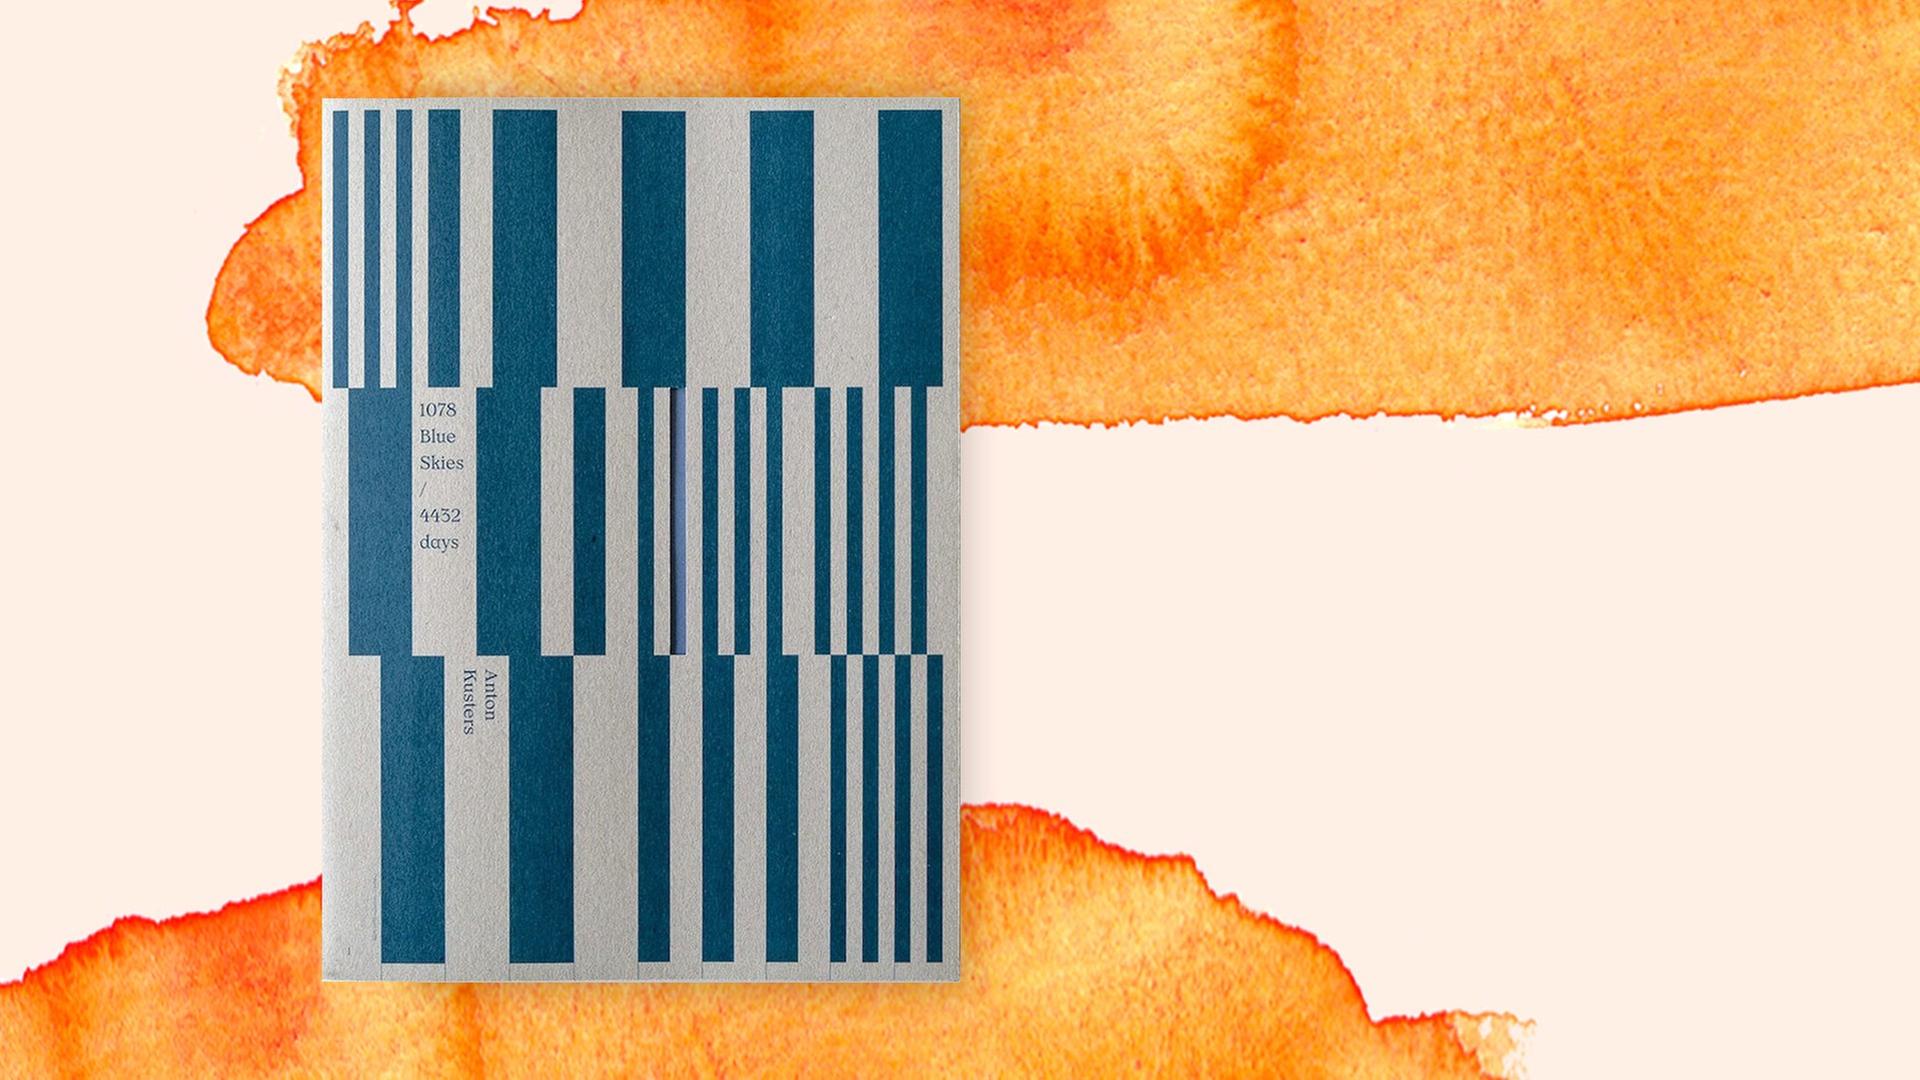 Das Cover des Buches von Anton Kuster: "1078 Blue Skies / 4432 Days" auf orange-weißem Grund.